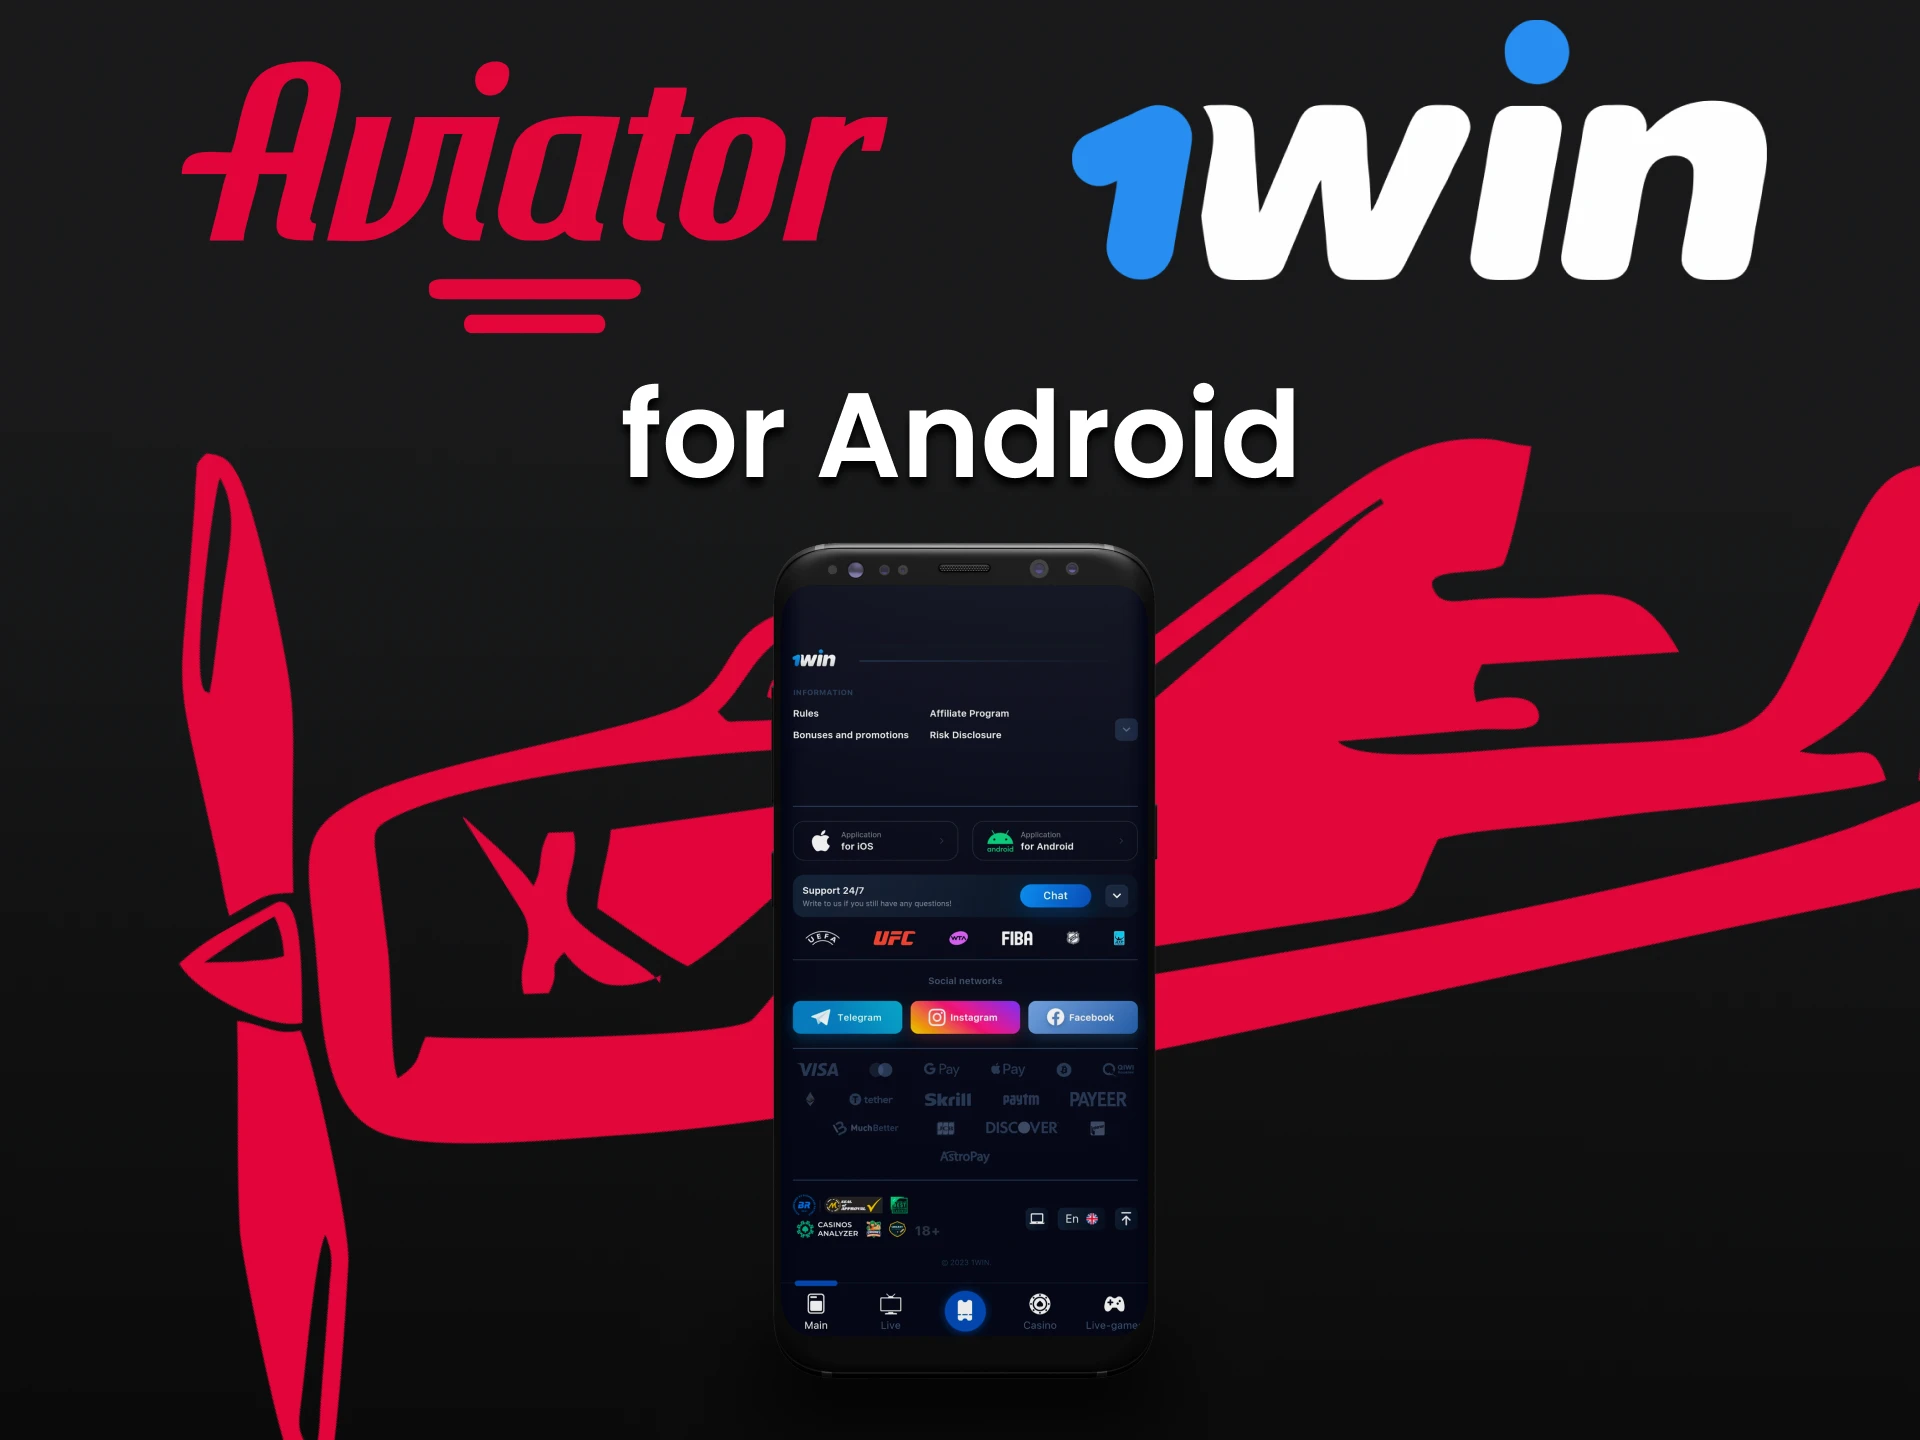 Faça o download do aplicativo 1win para jogar o Aviator.